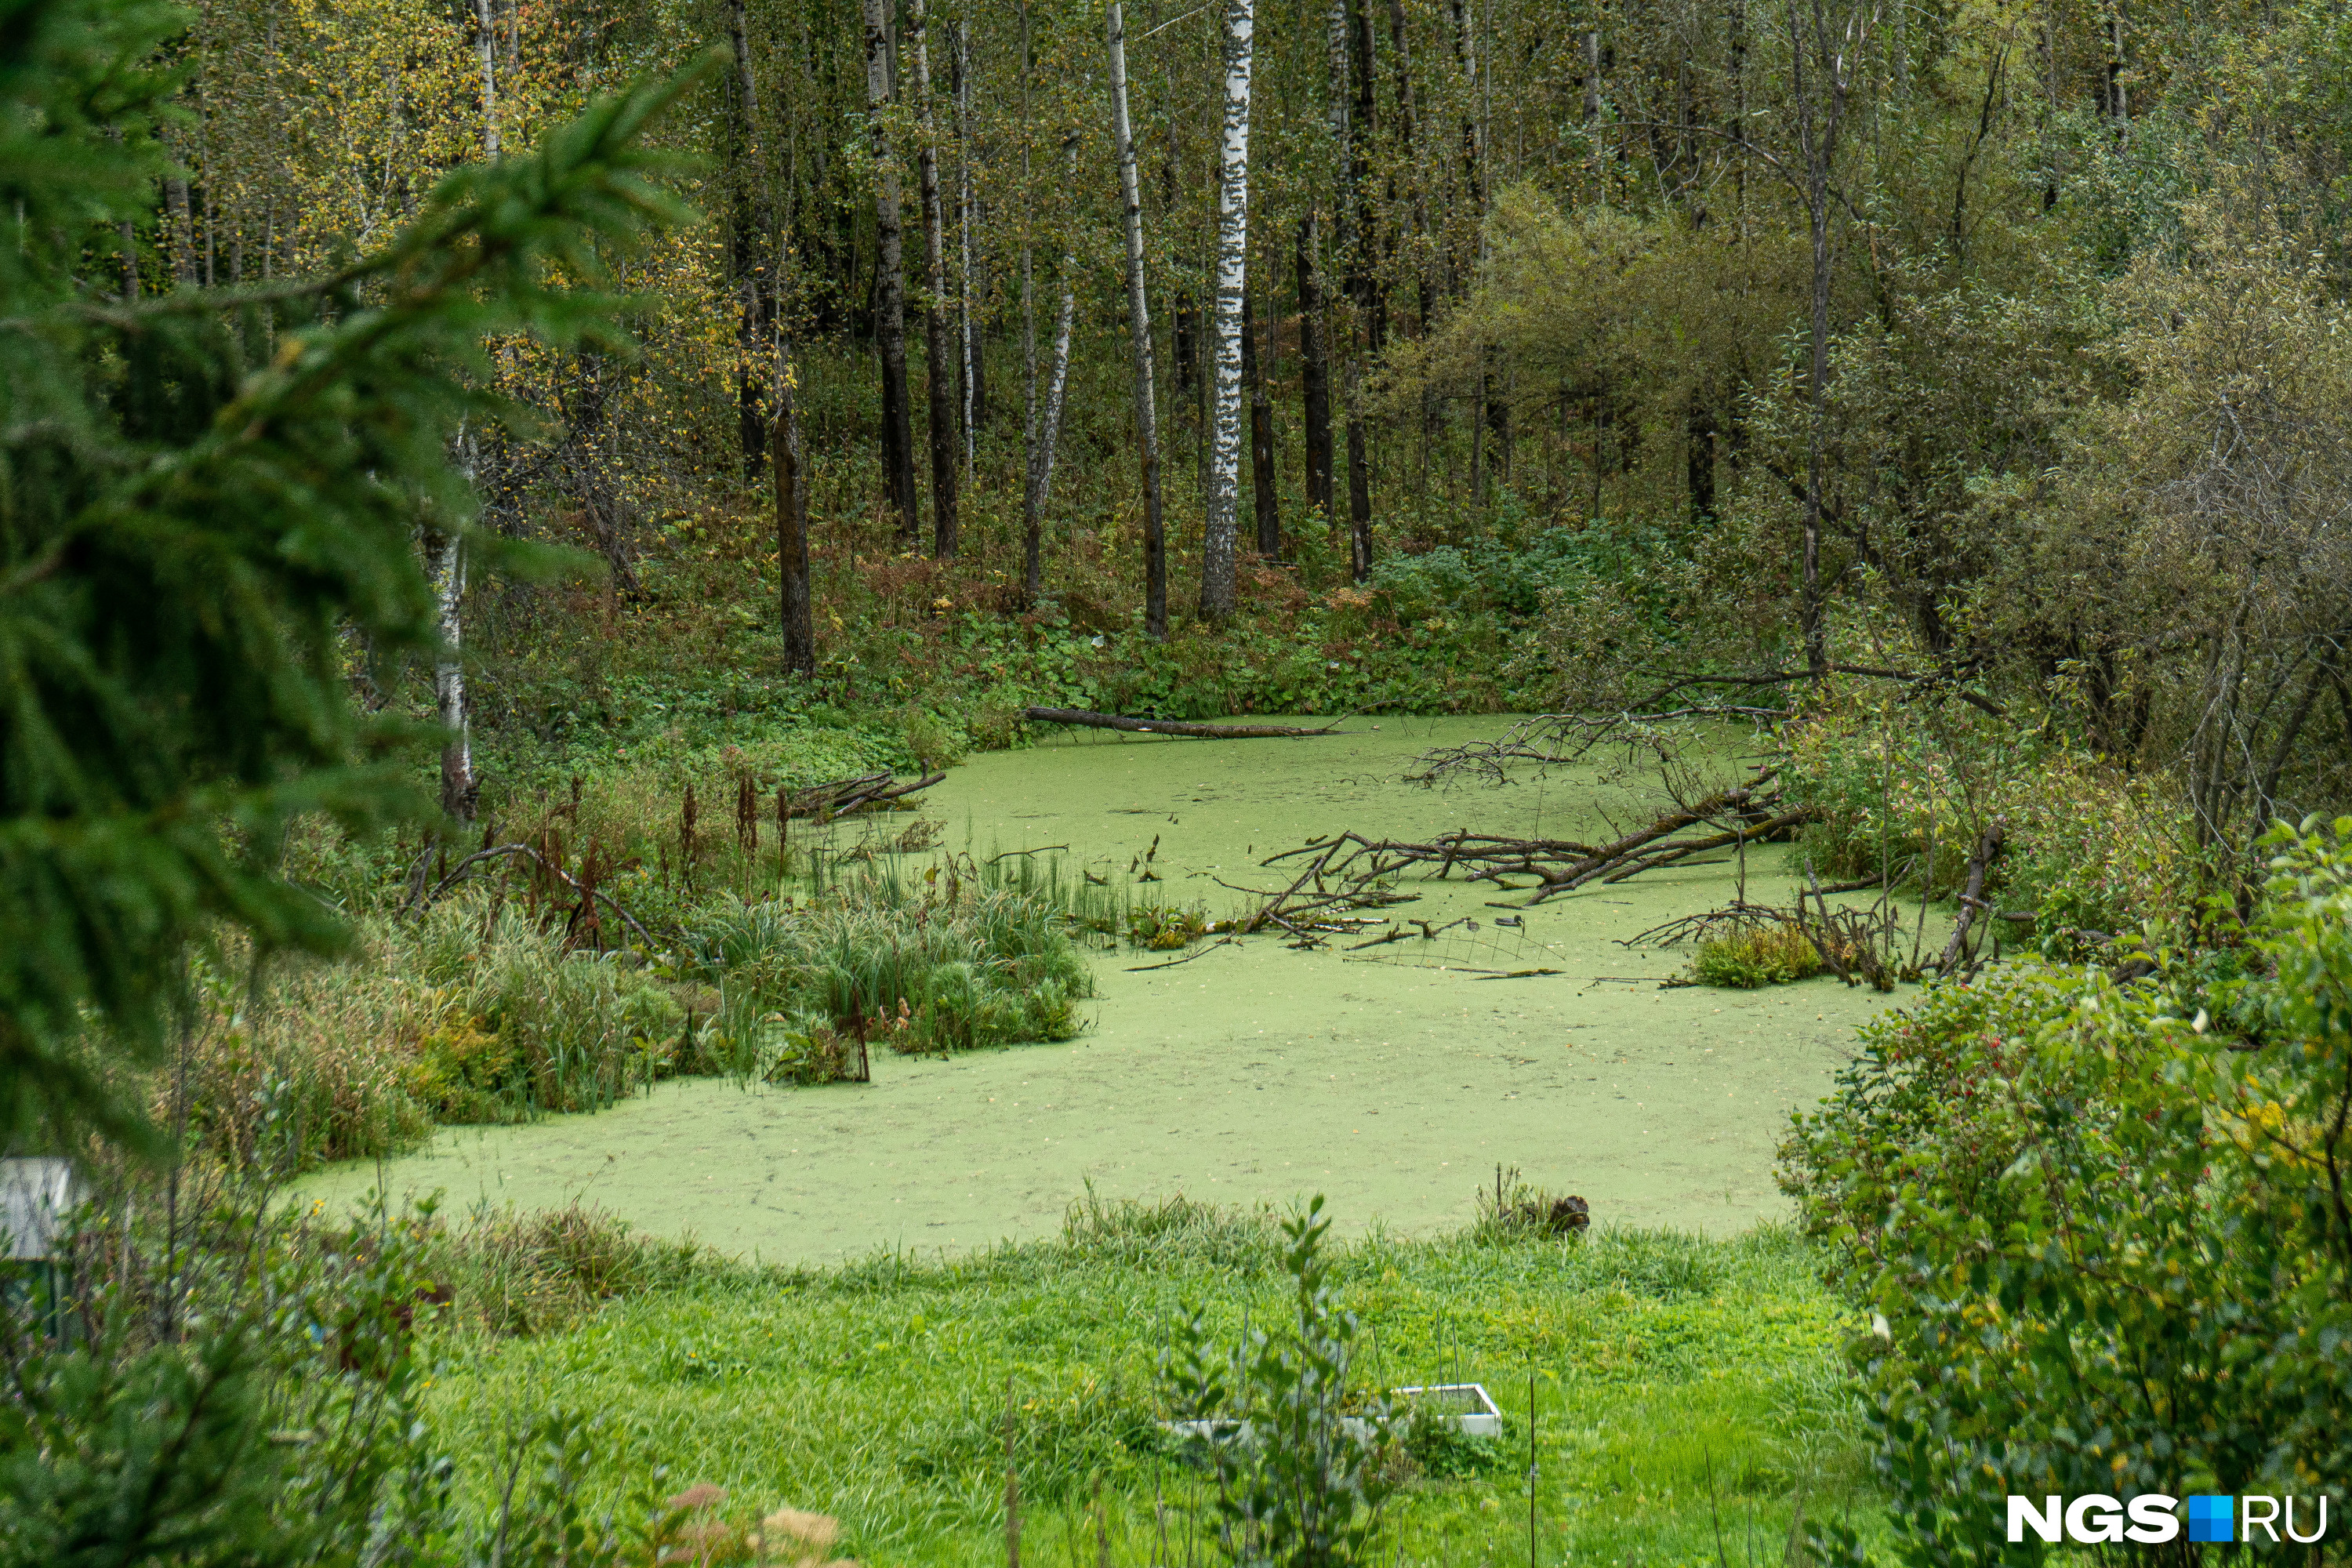 Другие дачники запрудили речку, но пруд без должного внимания зарос и превратился в болотце